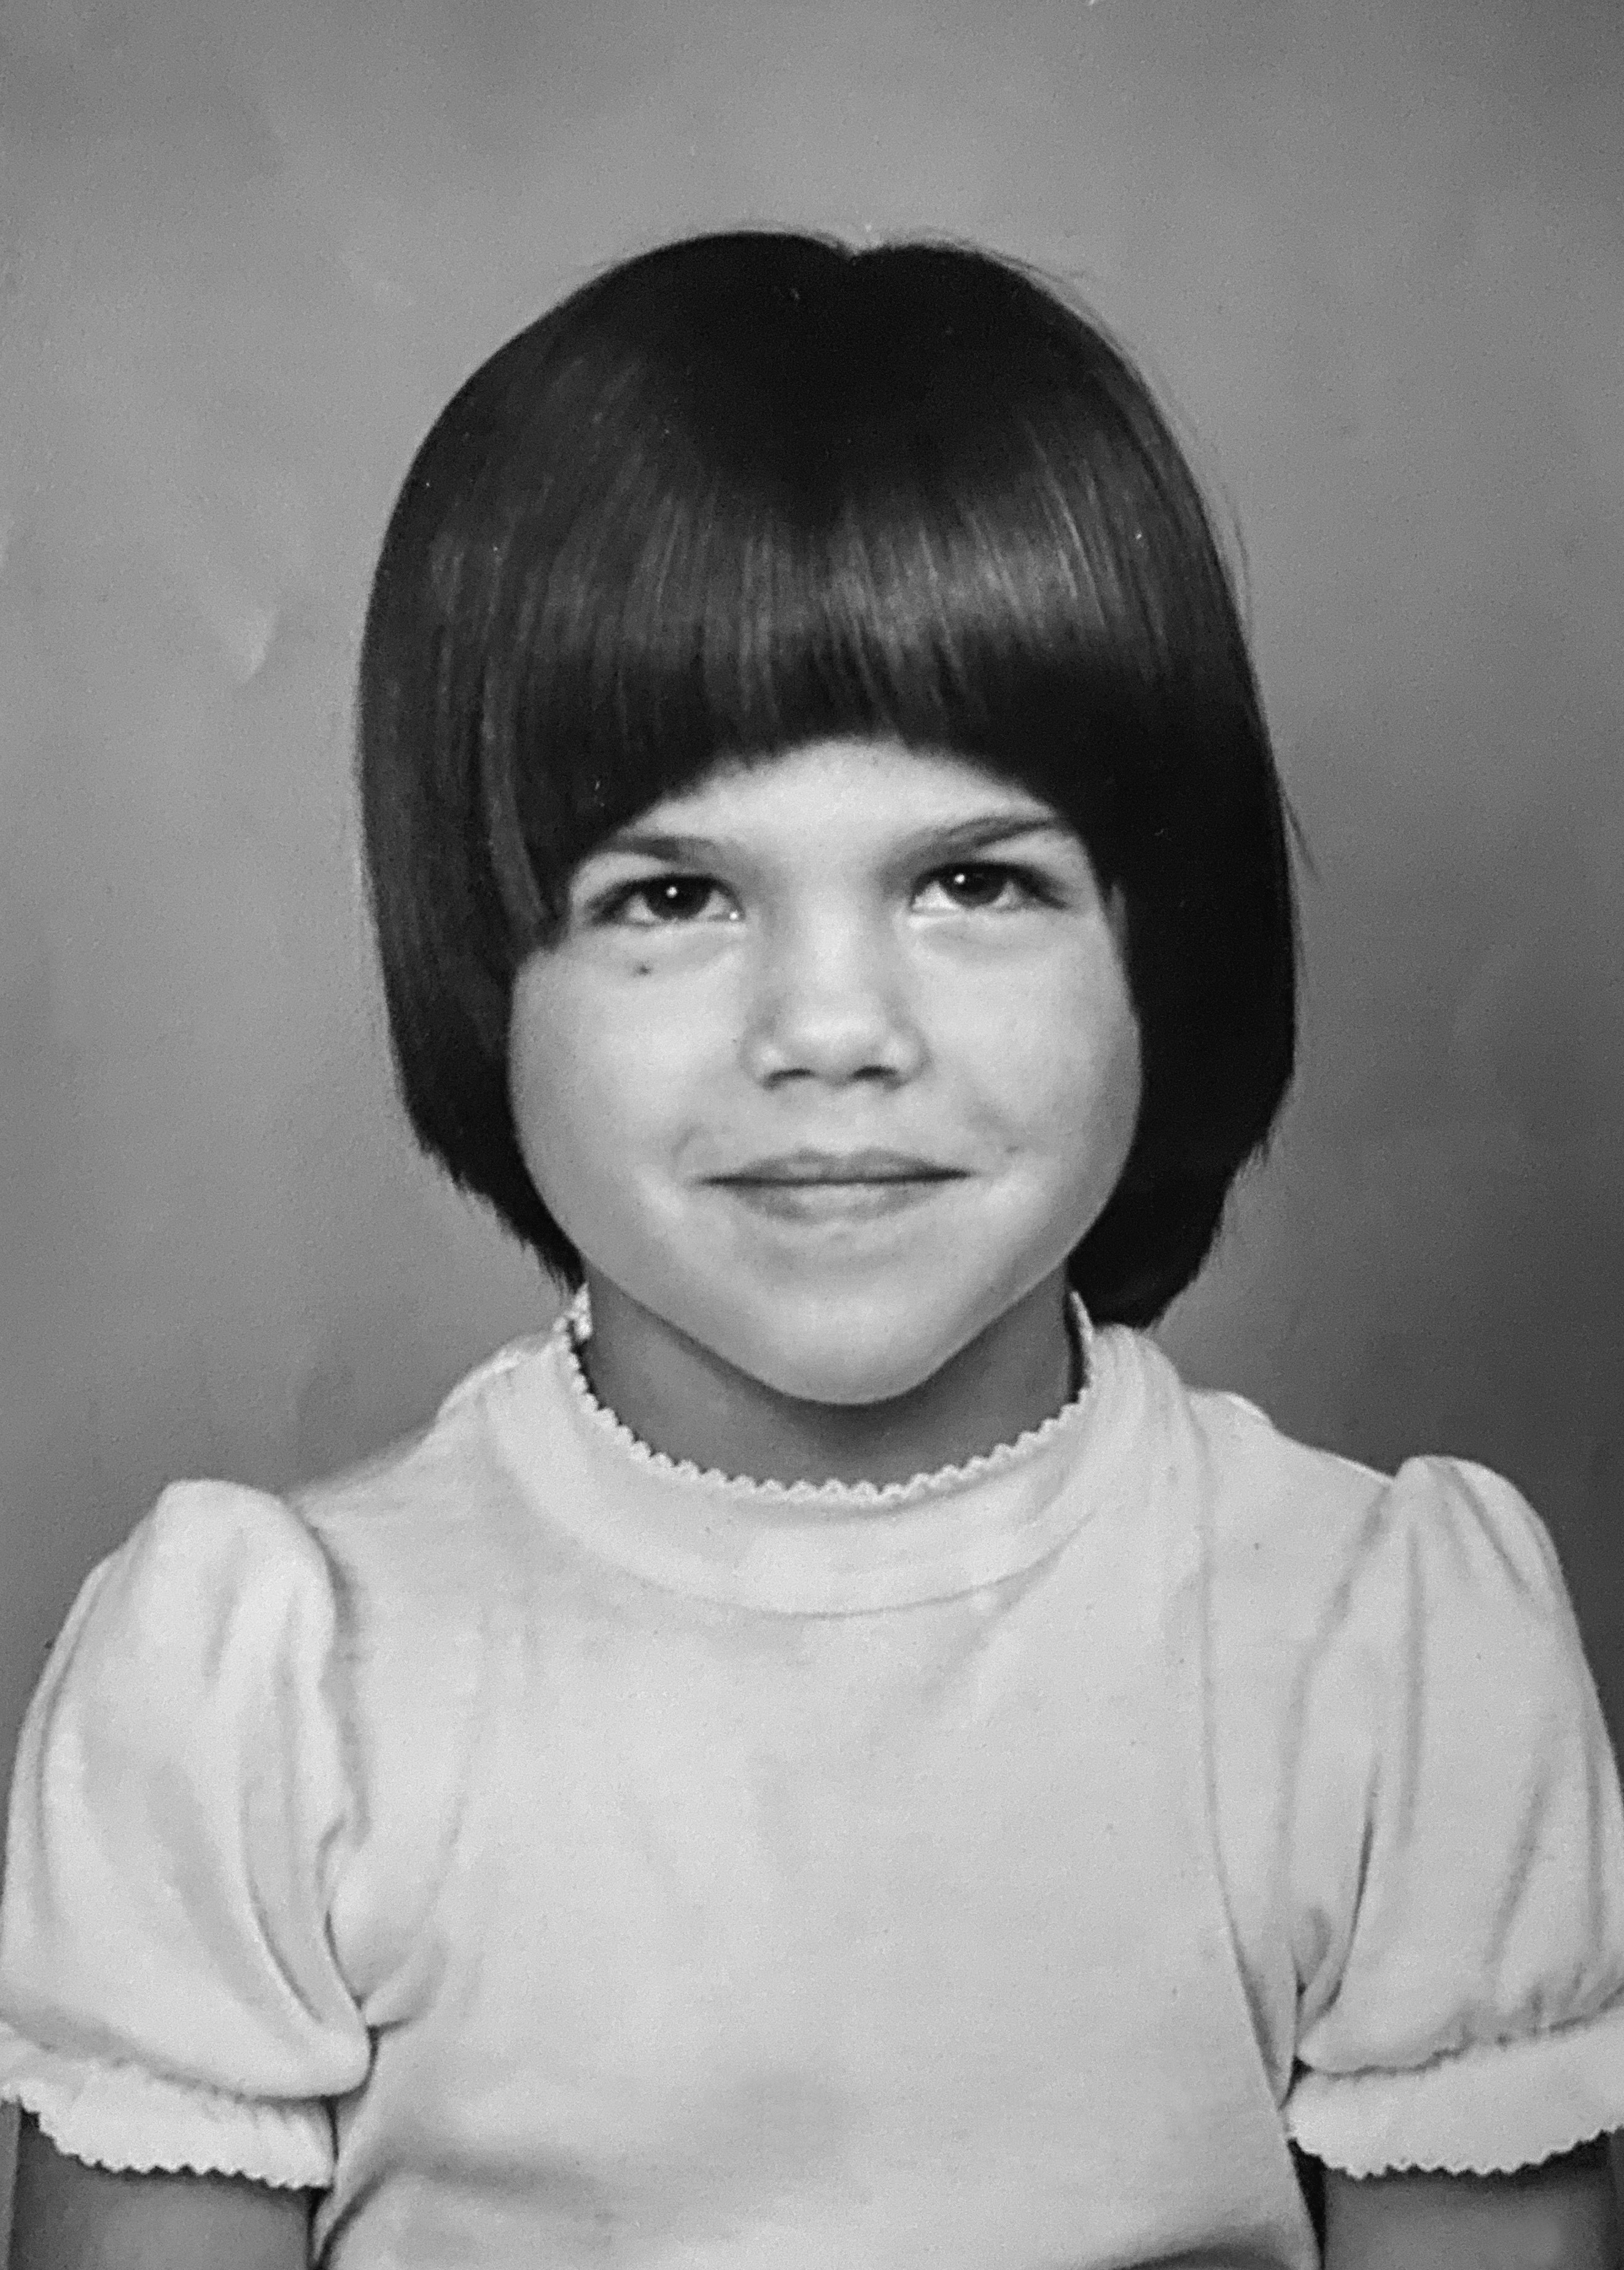 Una fotografía de infancia de Selma Blair.